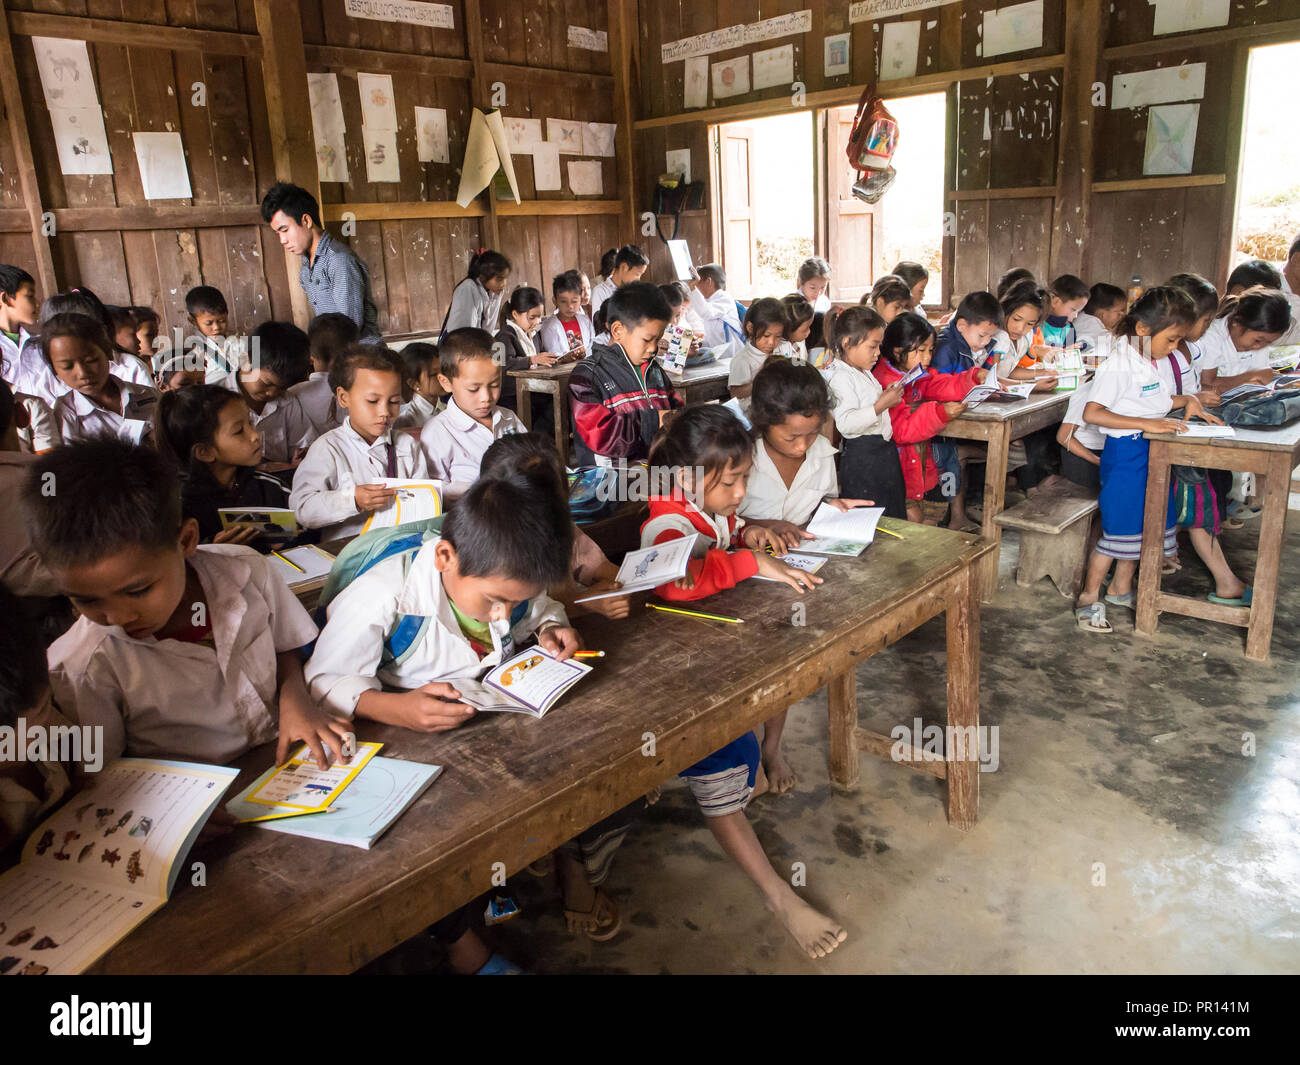 La scuola primaria aula piena di studenti, Houy Mieng village, Laos, Indocina, Asia sud-orientale, Asia Foto Stock